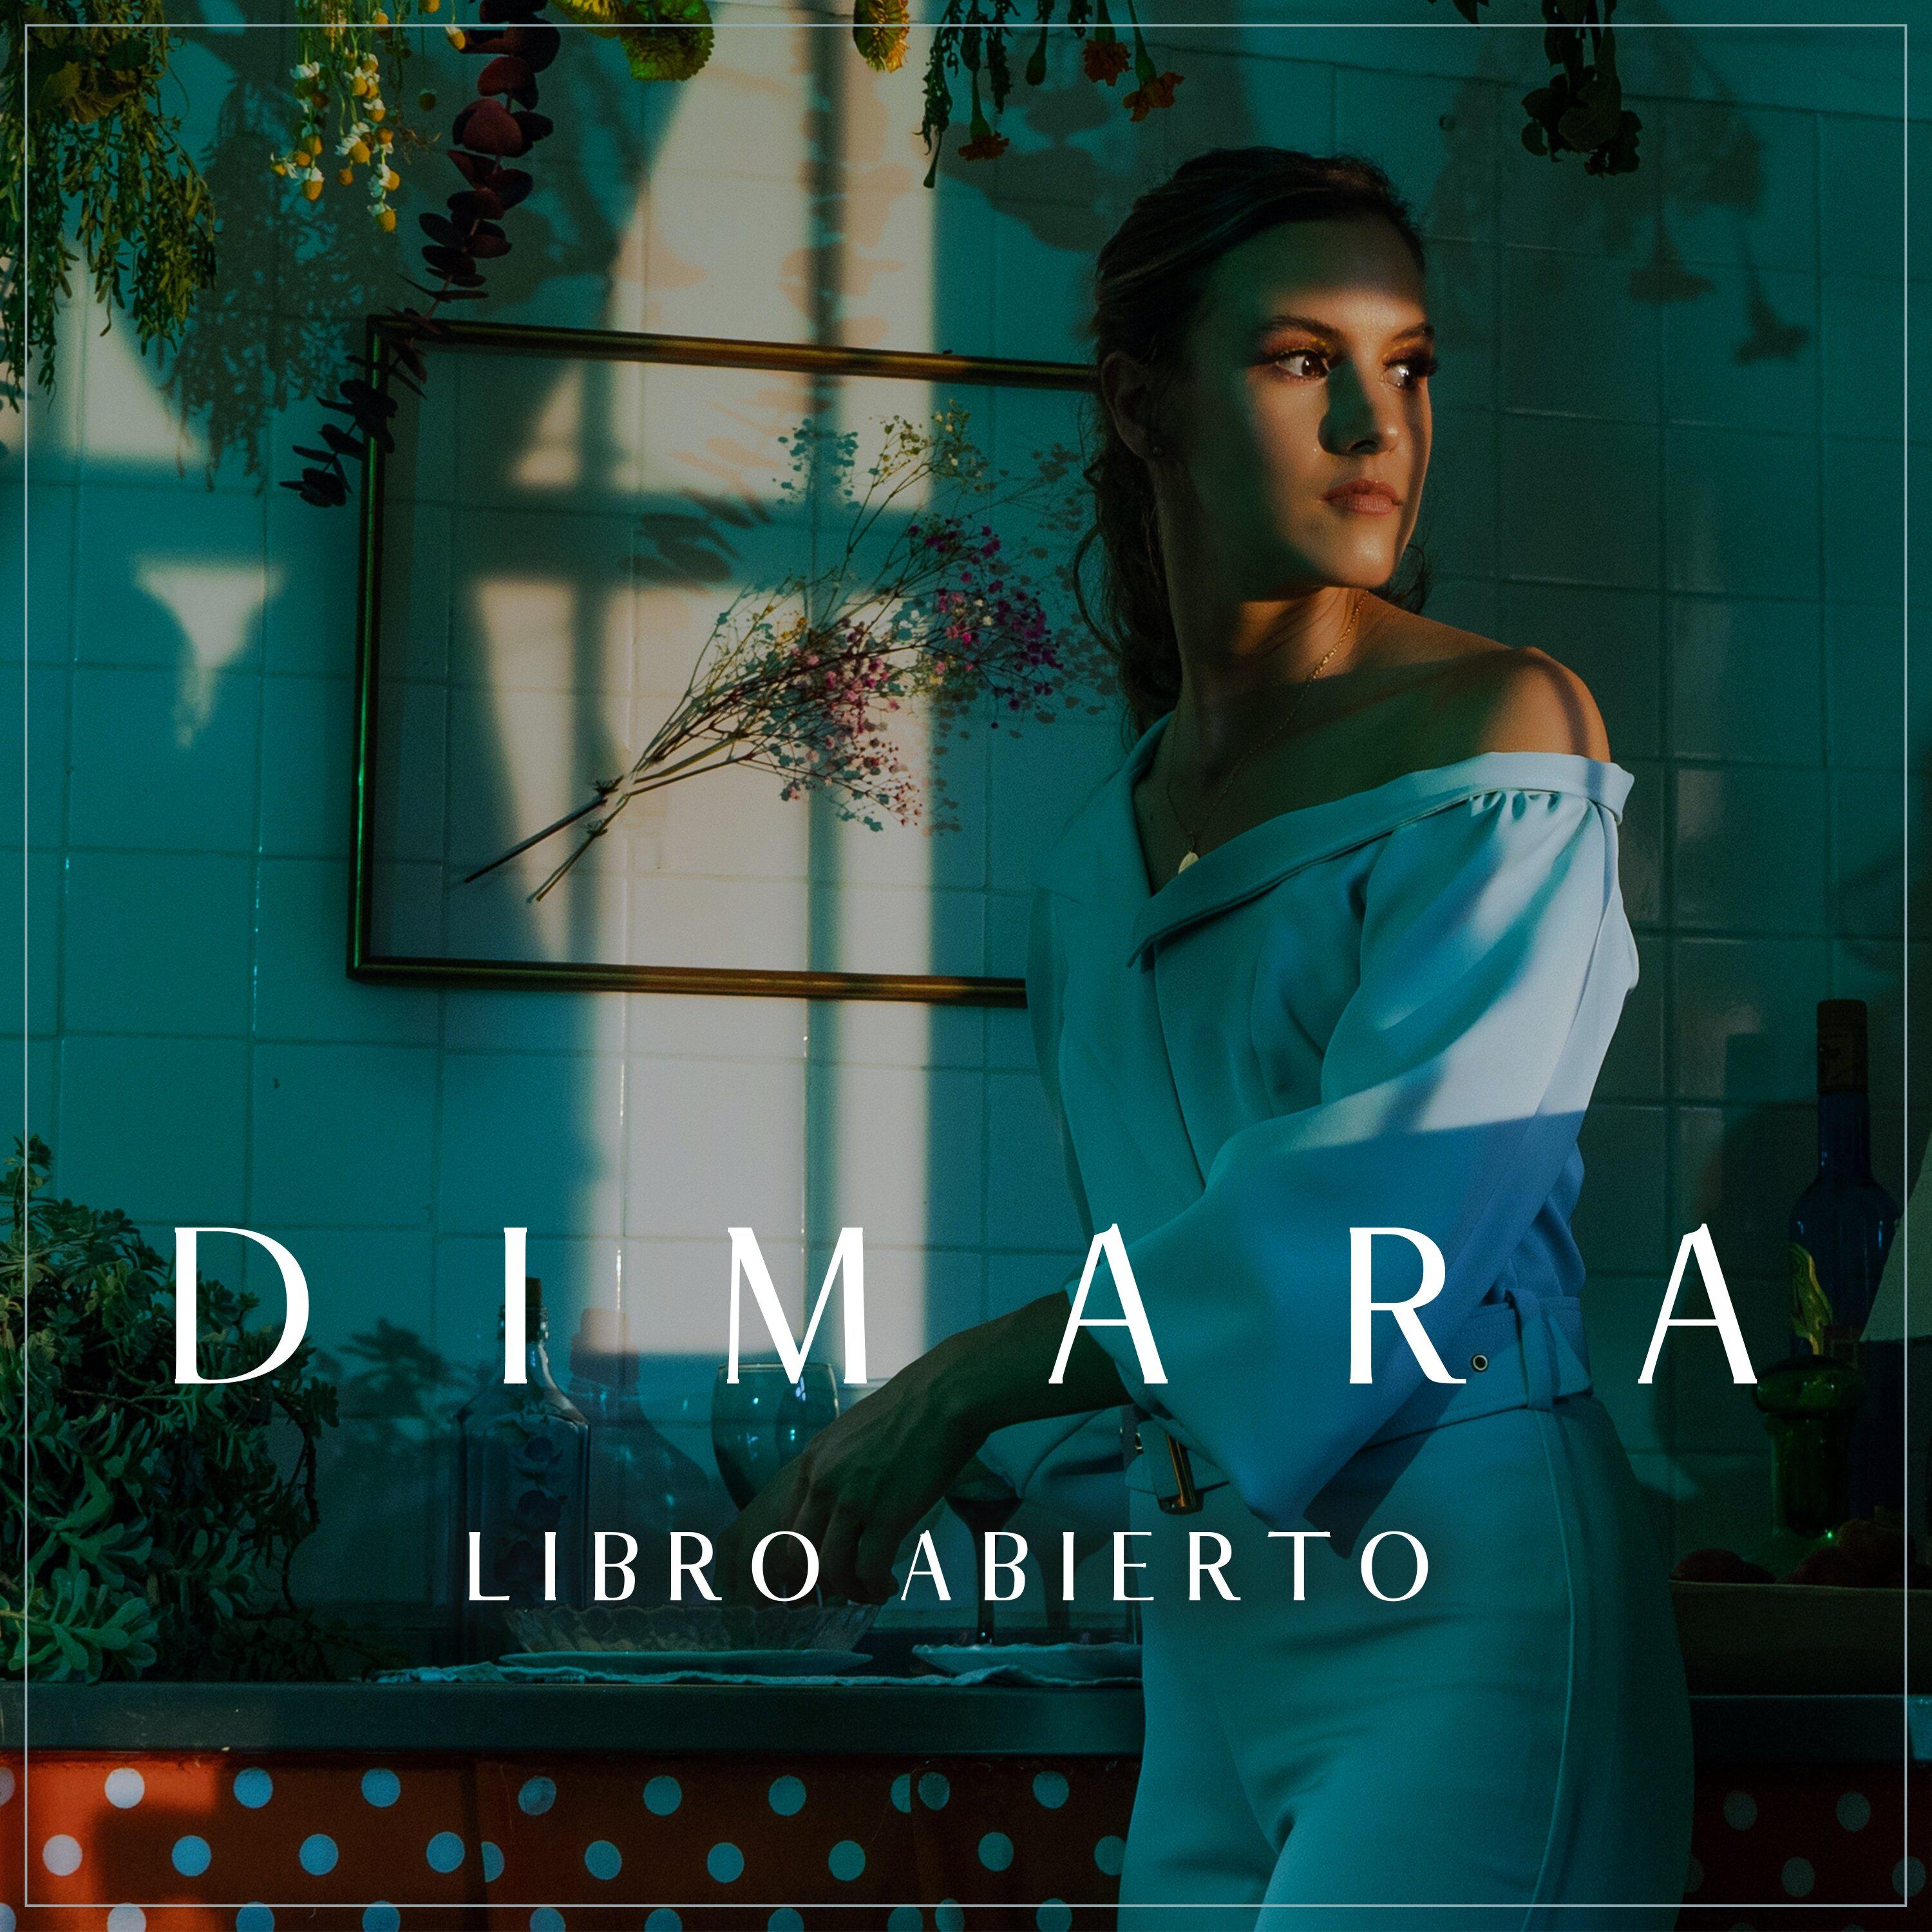 Dimara - Libro abierto